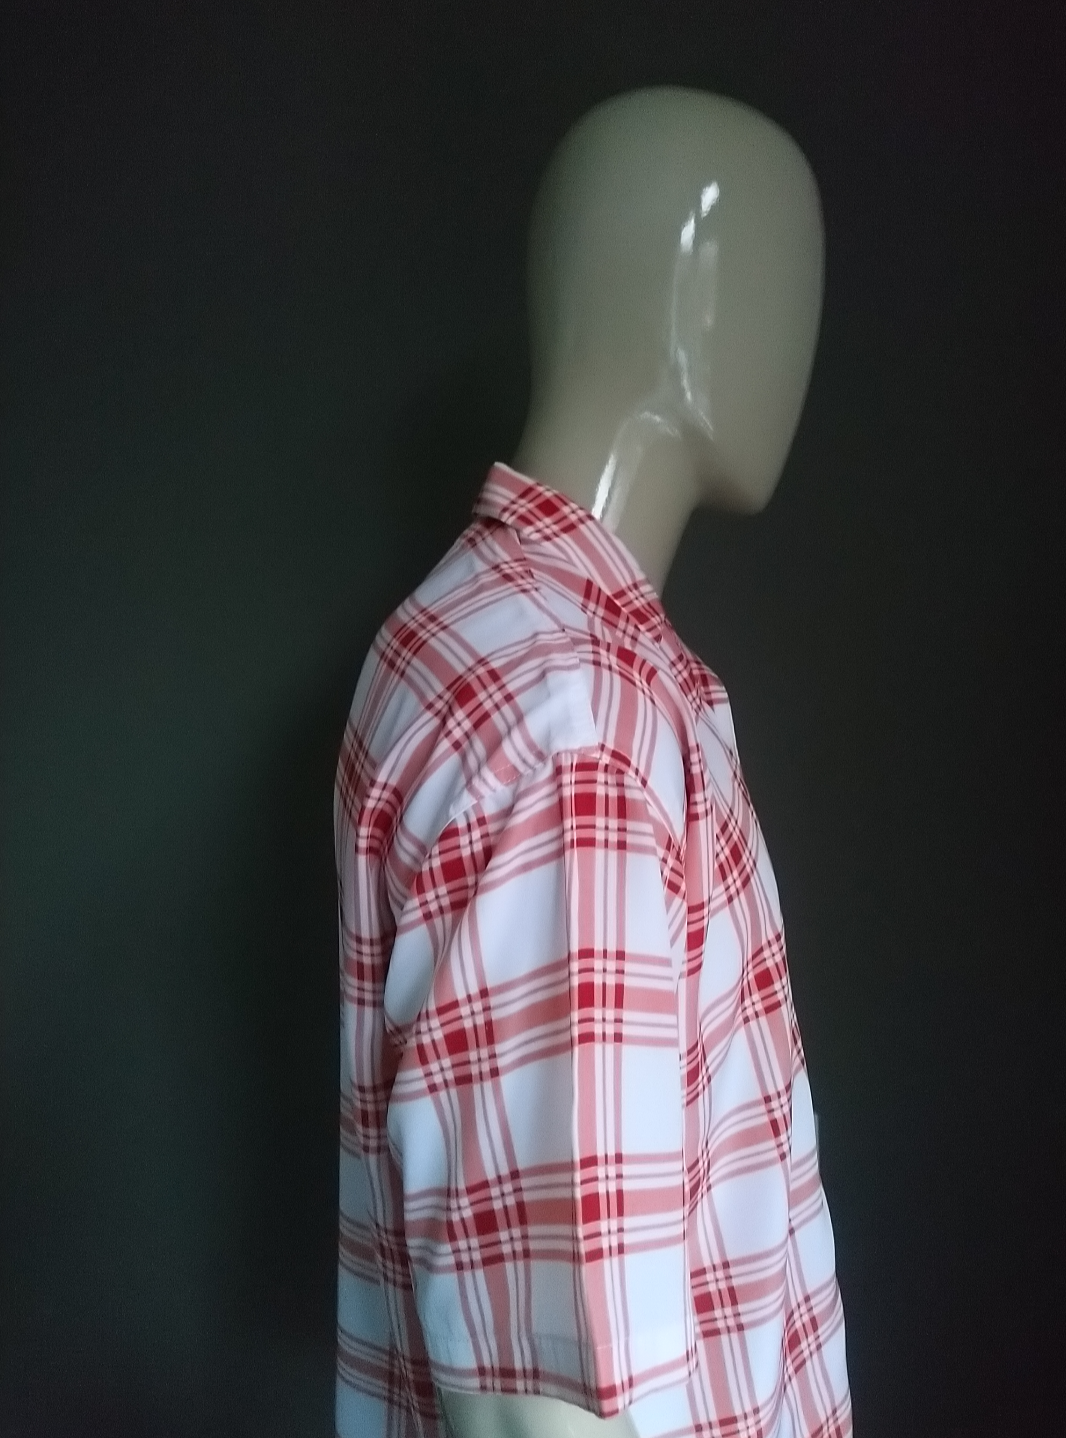 Camicia Supercool con maniche corte. Motivo a quadretti bianco rosa rosso. Taglia L.